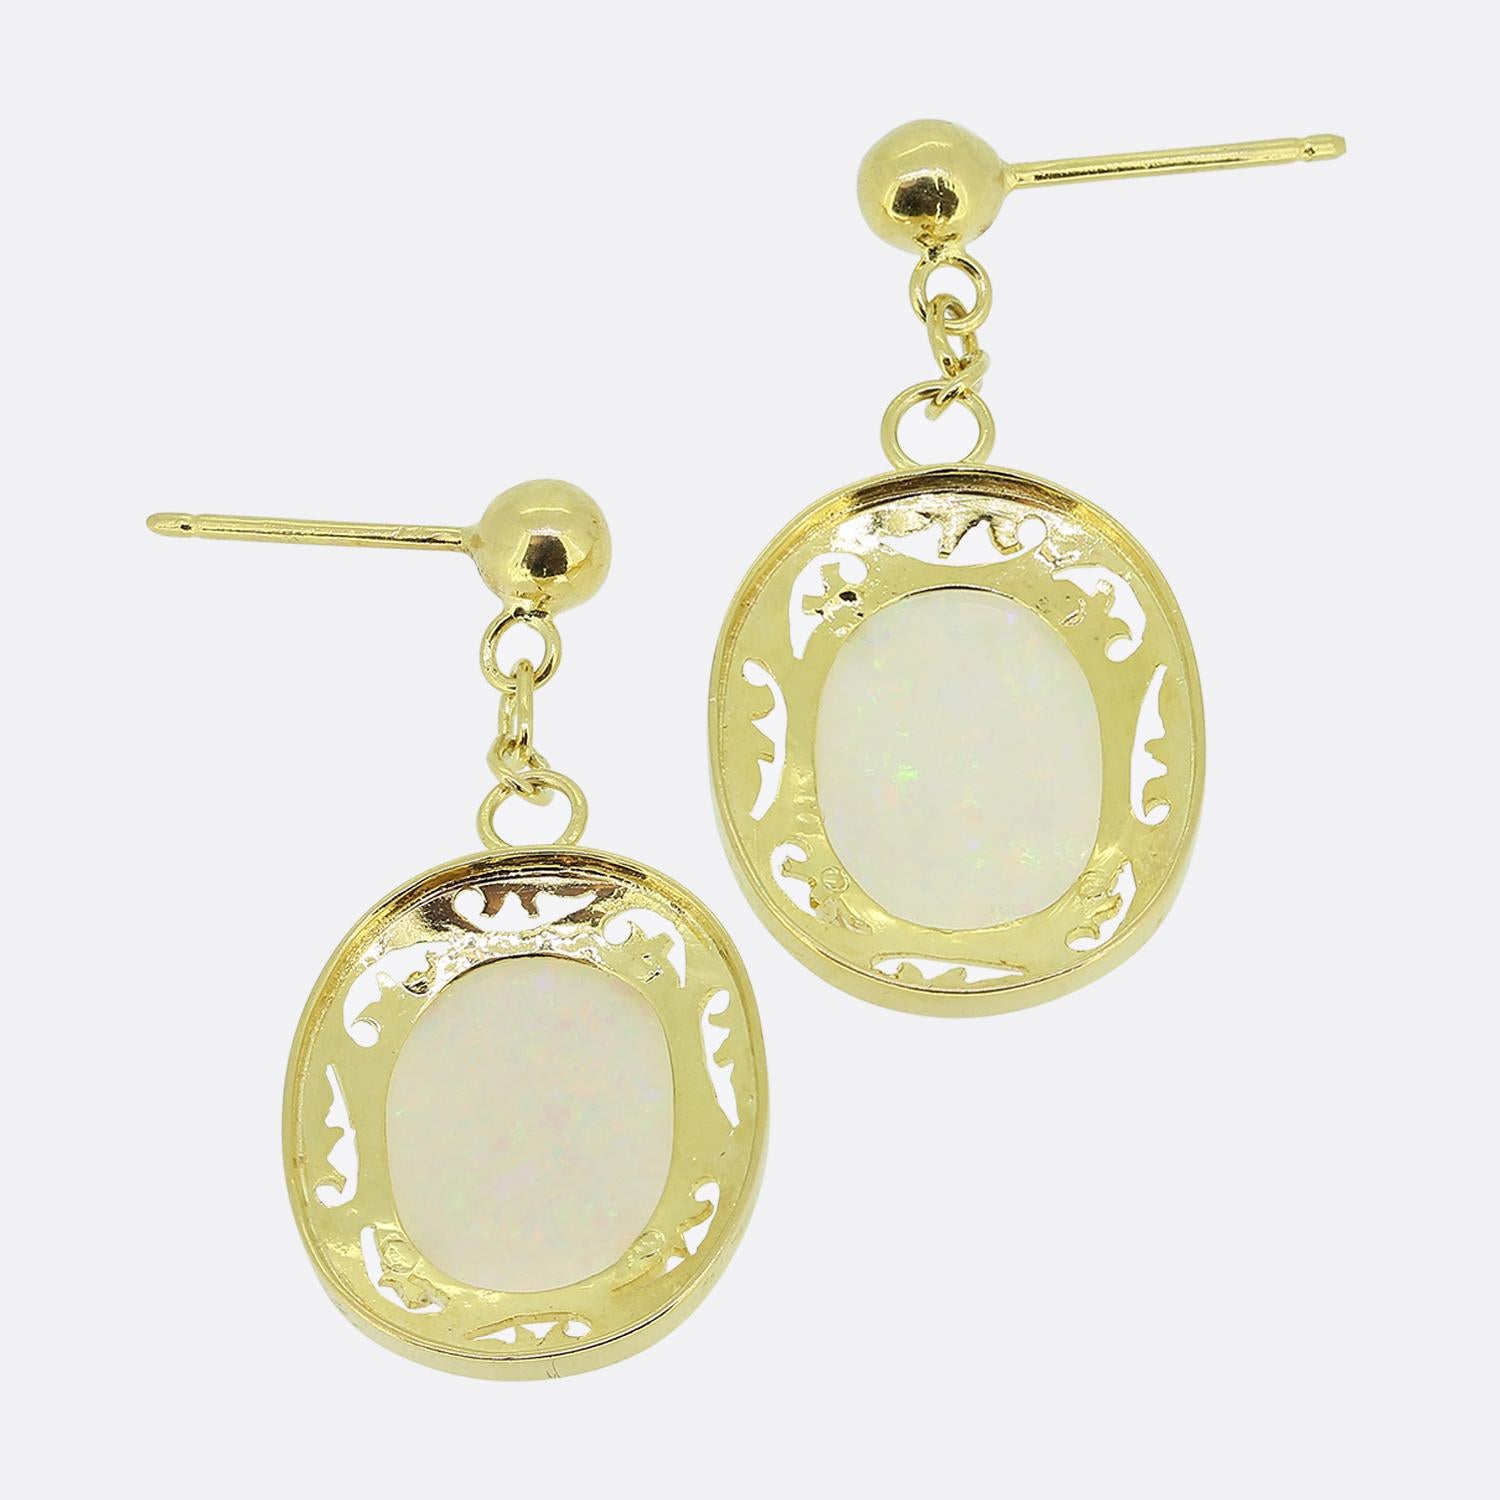 Nous avons ici une magnifique paire de boucles d'oreilles en opale. Chaque pièce vintage identique a été fabriquée en or jaune 18 carats avec une monture à quatre griffes accueillant une opale blanche de forme ovale présentant des éclats colorés de